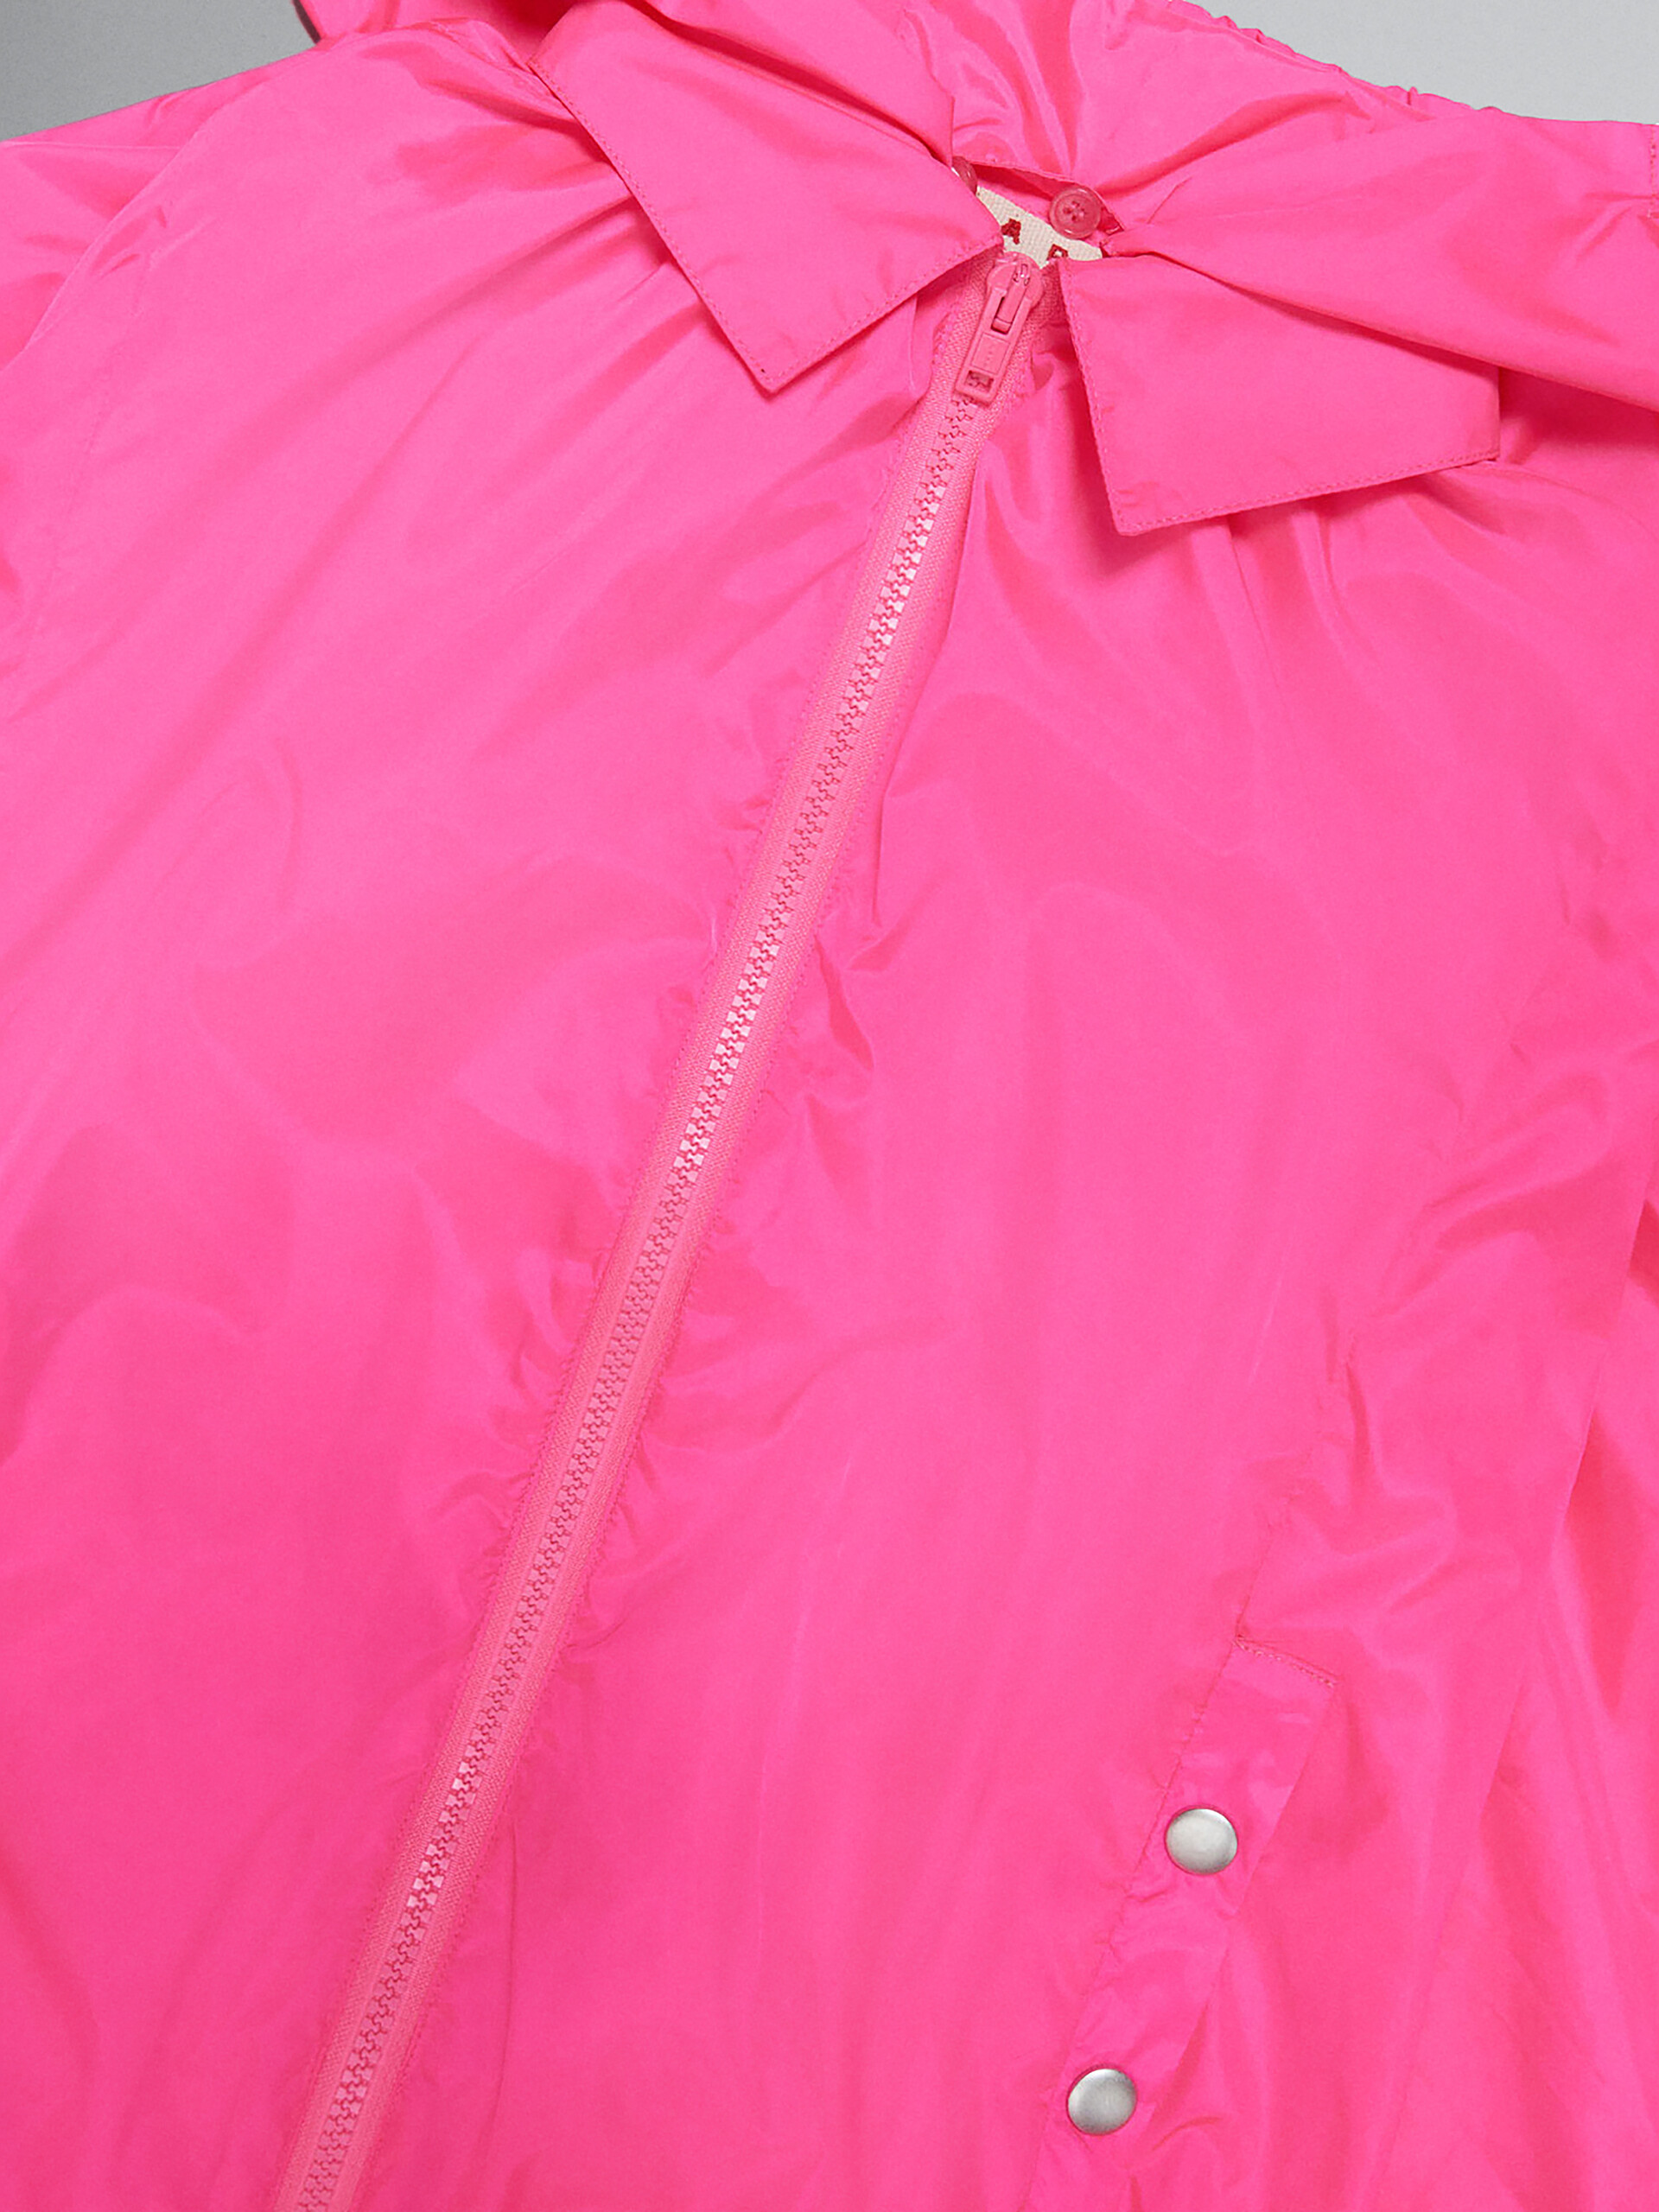 Chaqueta impermeable rosa neón con logotipo en la capucha - Chaquetas - Image 4